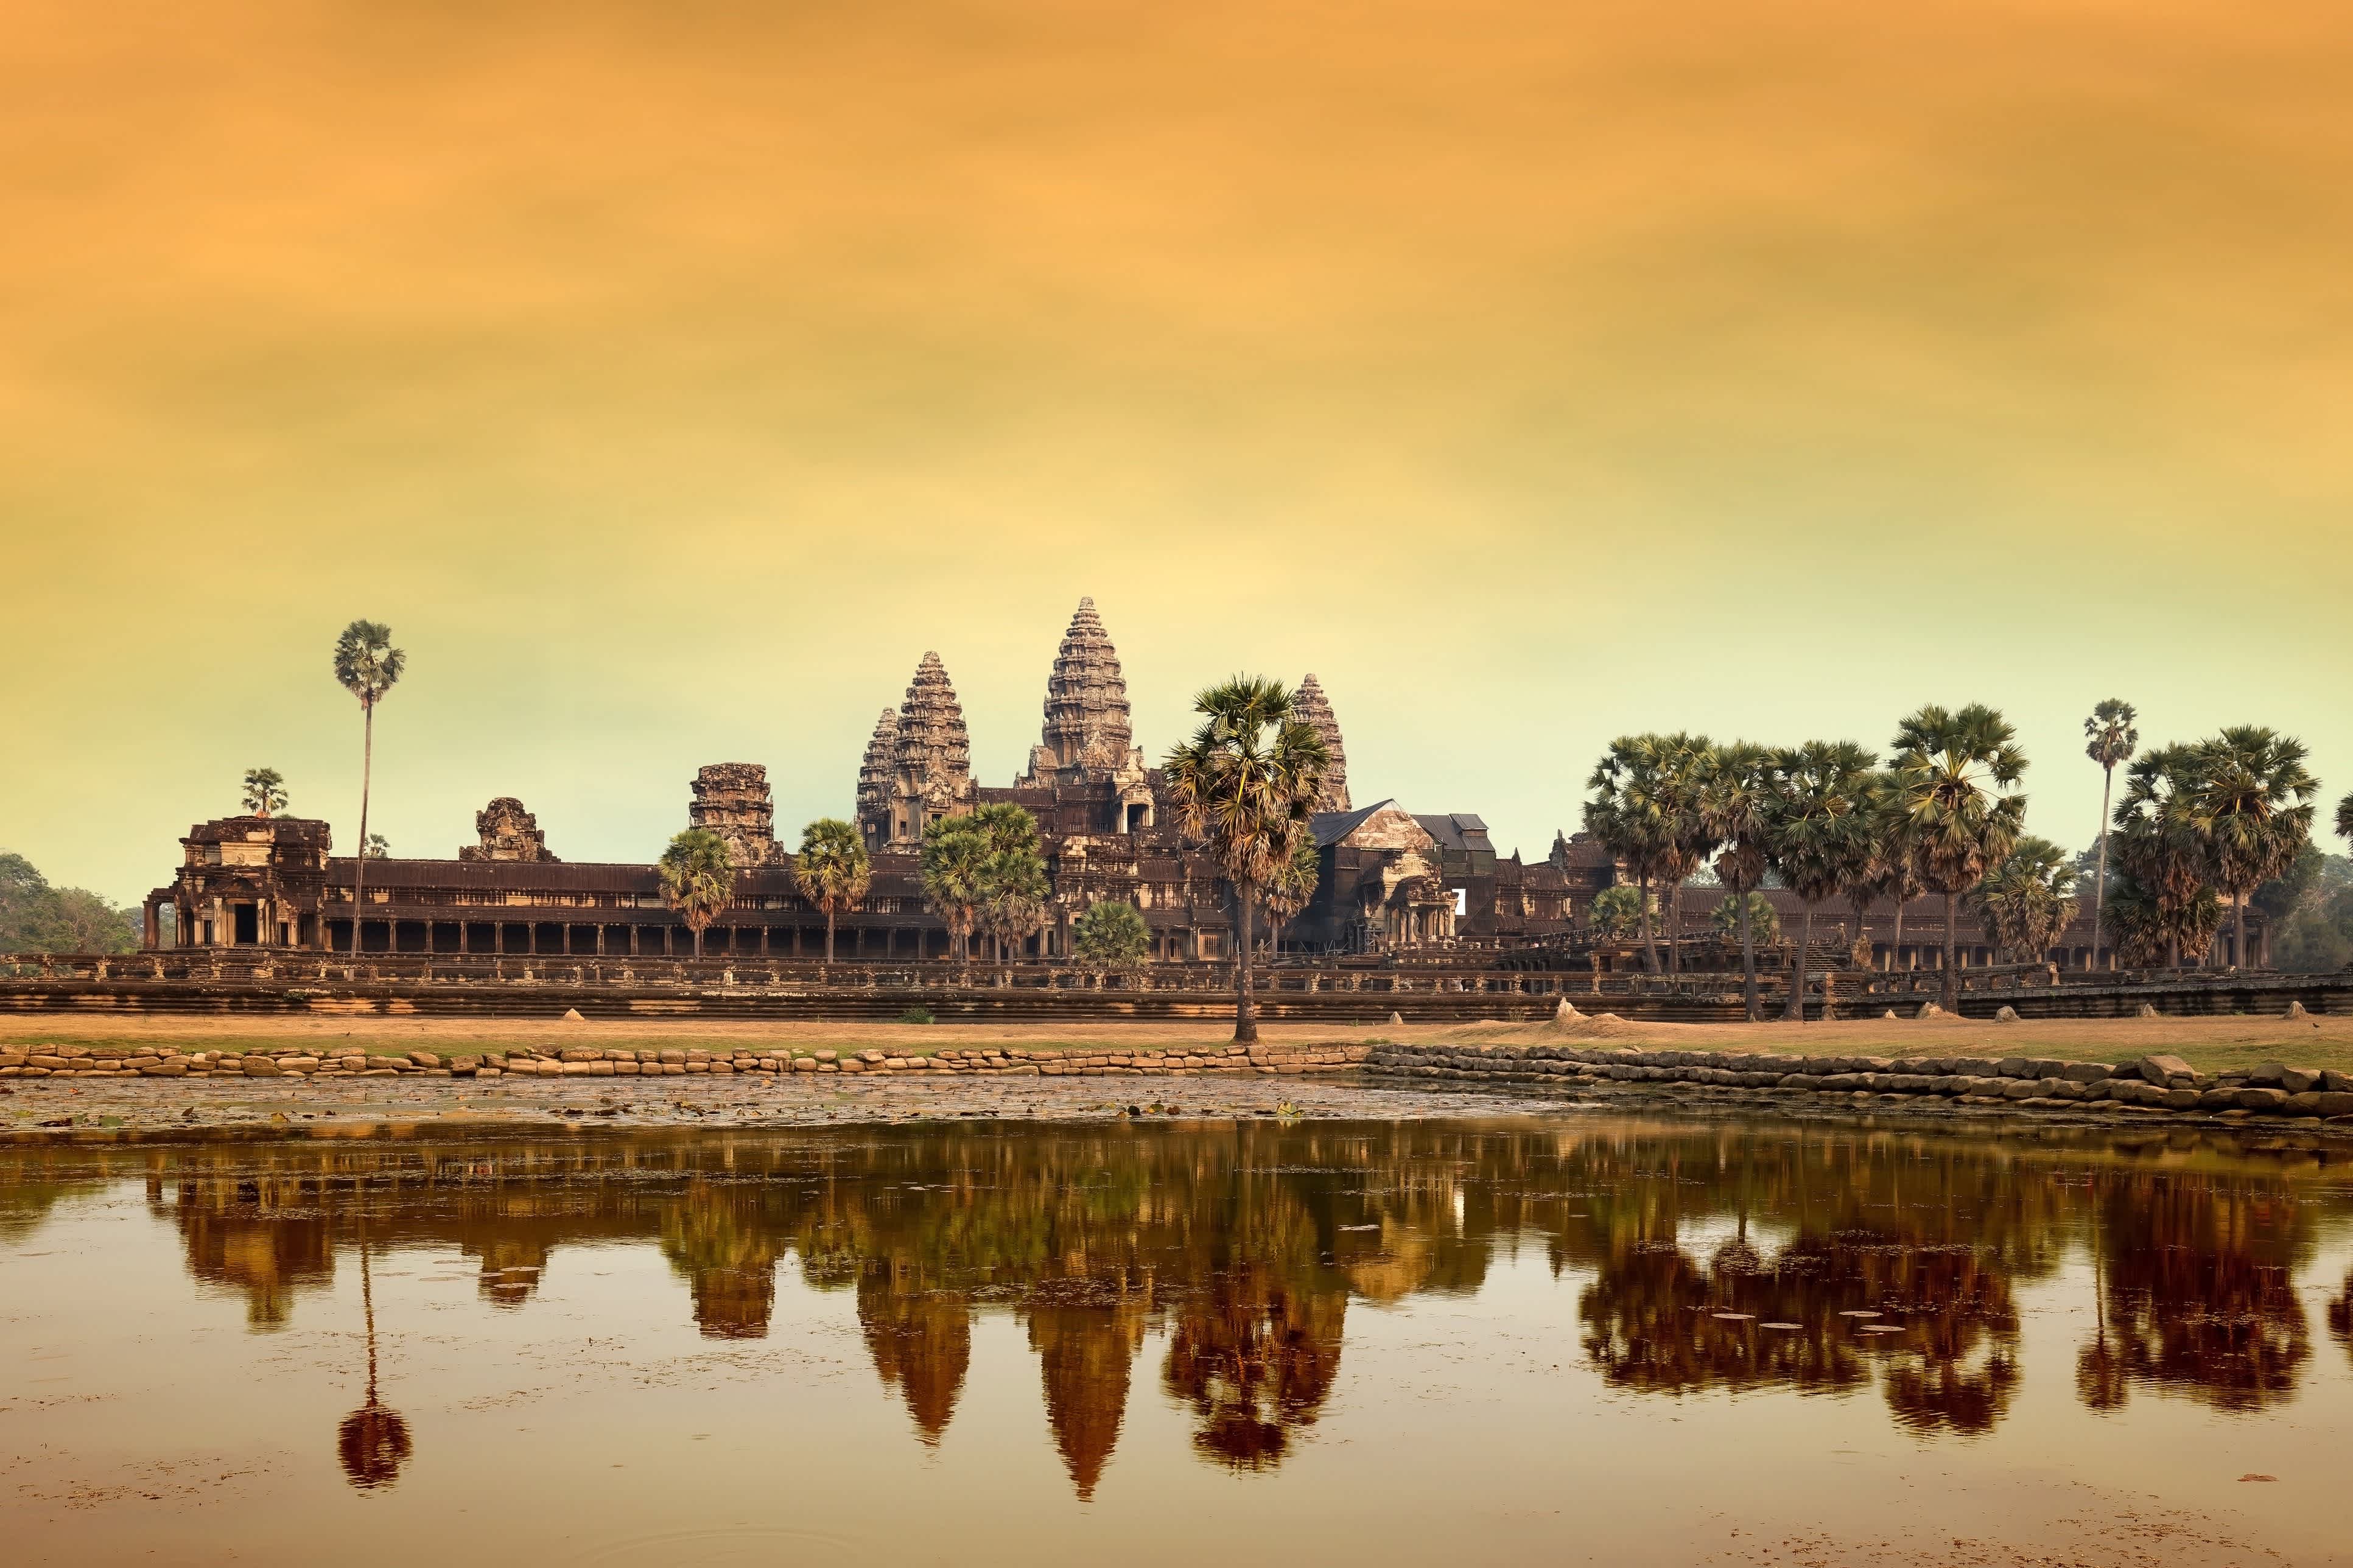 Siem Reap in Cambodia, Asia